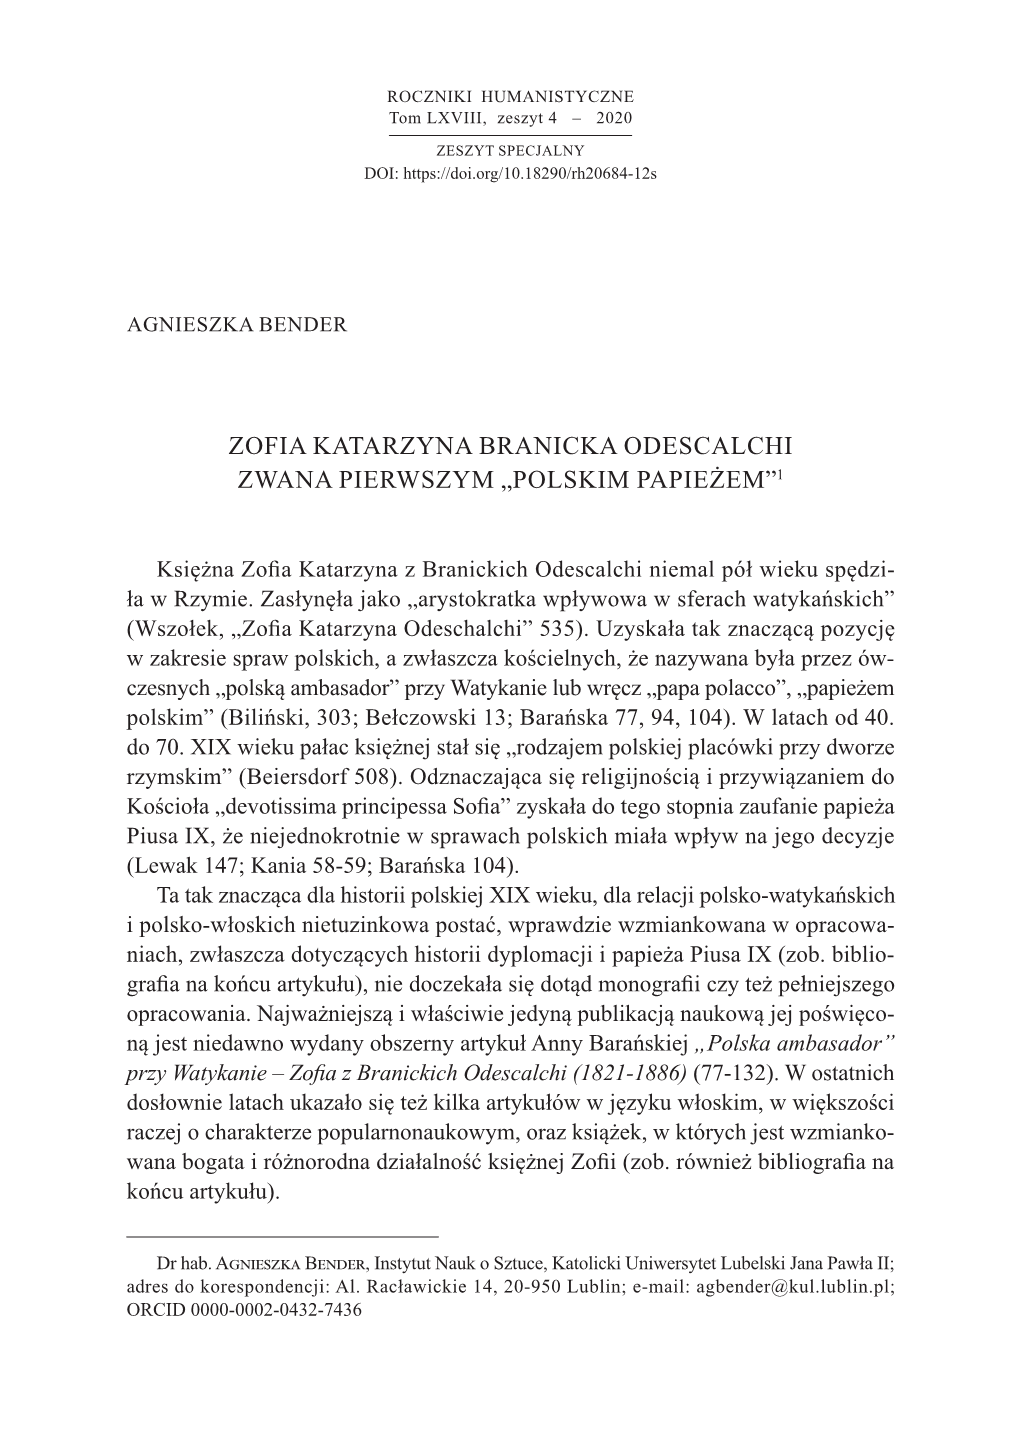 Zofia Katarzyna Branicka Odescalchi Zwana Pierwszym „Polskim Papieżem”1